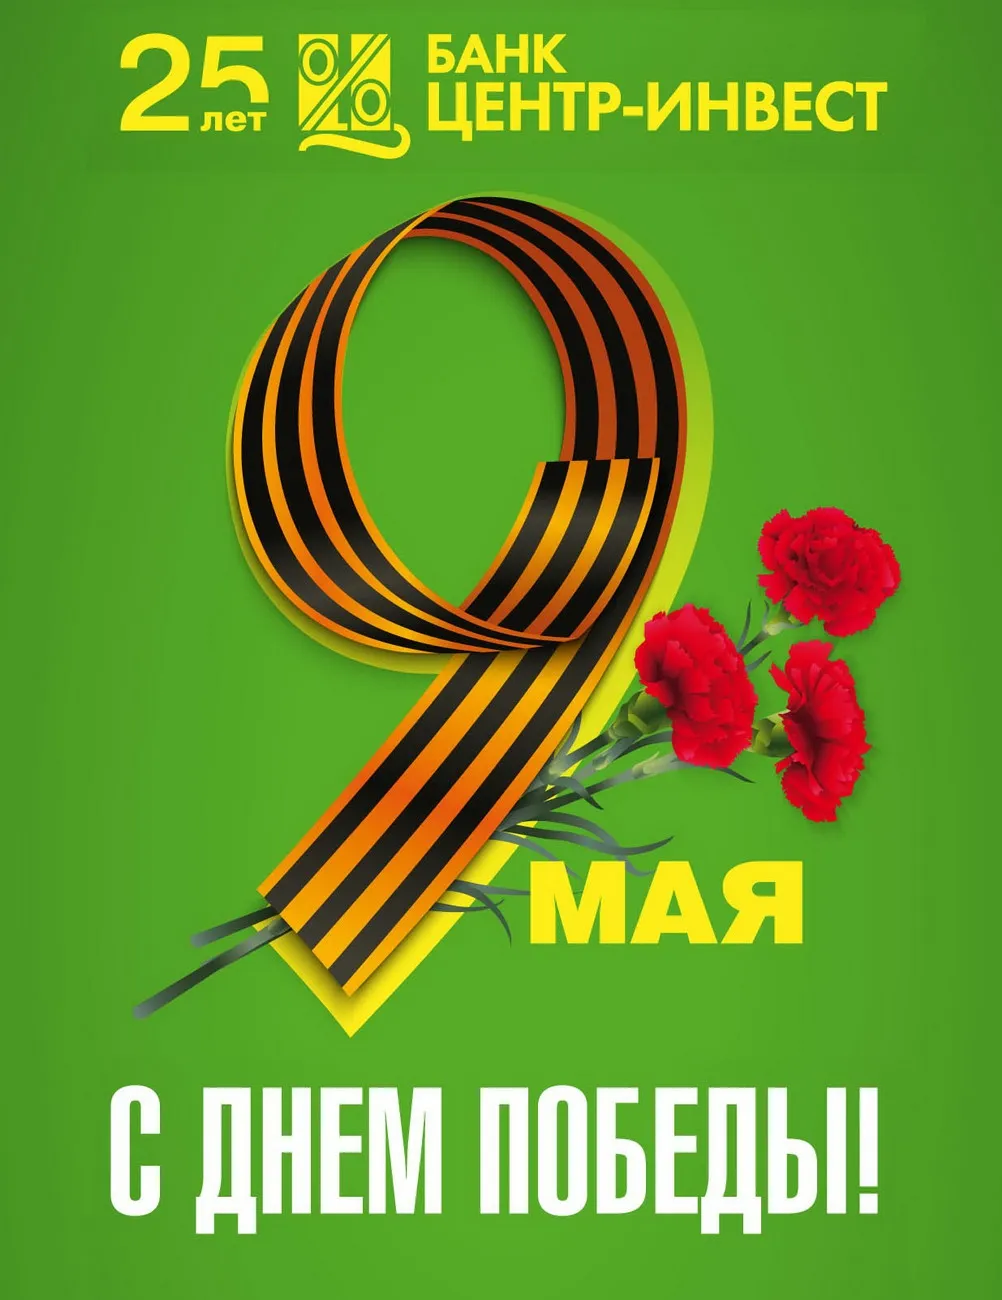 5 мая «Центр-инвест» подарит музыкальный подарок жителям Ростова-на-Дону